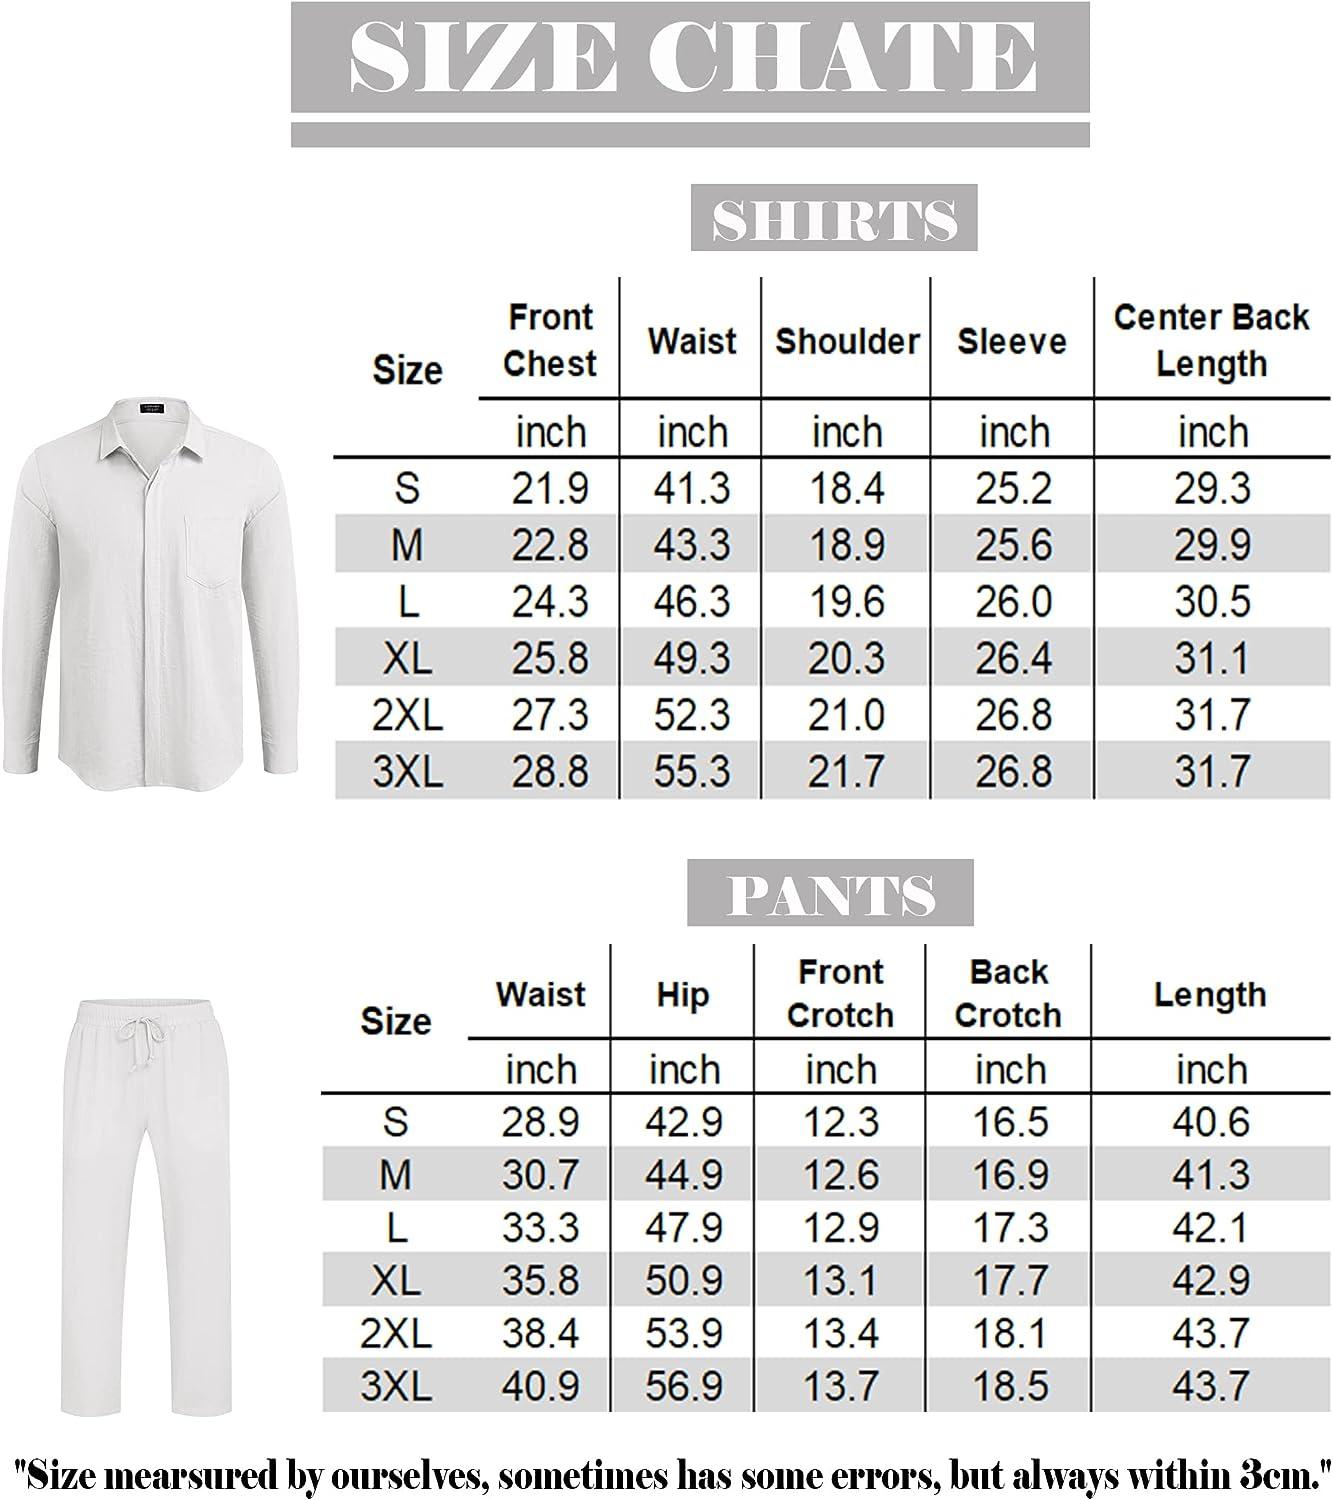 COOFANDY Men's 2 Piece Linen Sets Long Sleeve Button Down Shirt